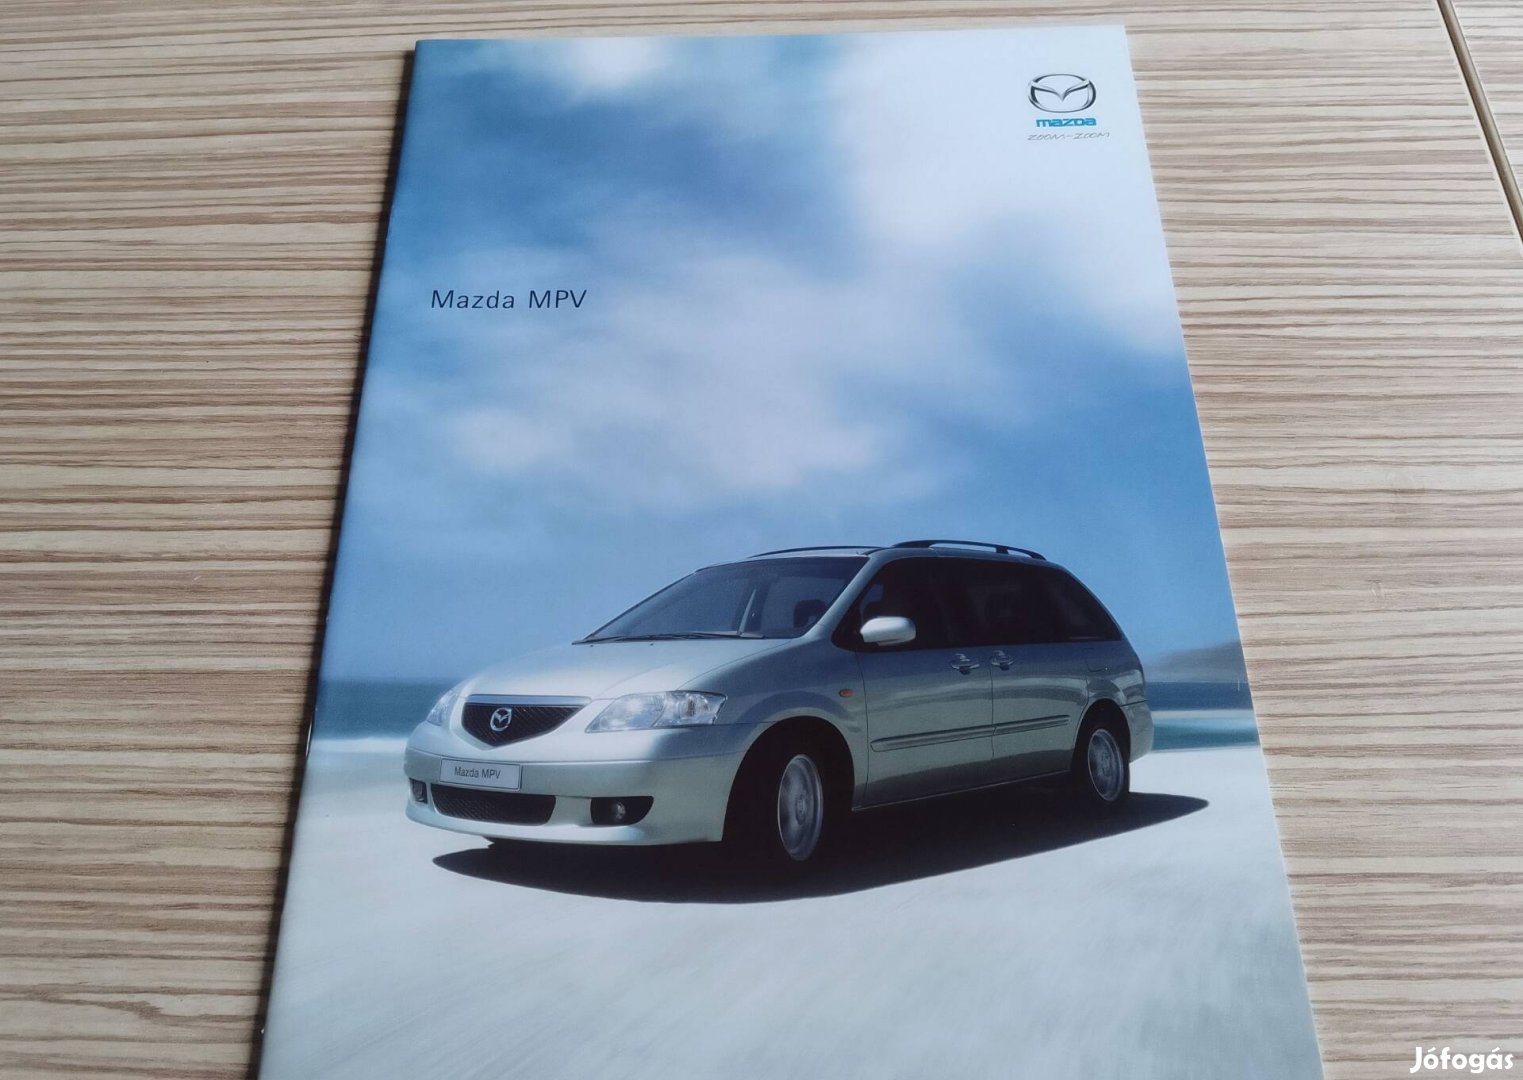 Mazda MPV (2002) magyar nyelvű prospektus, katalógus.